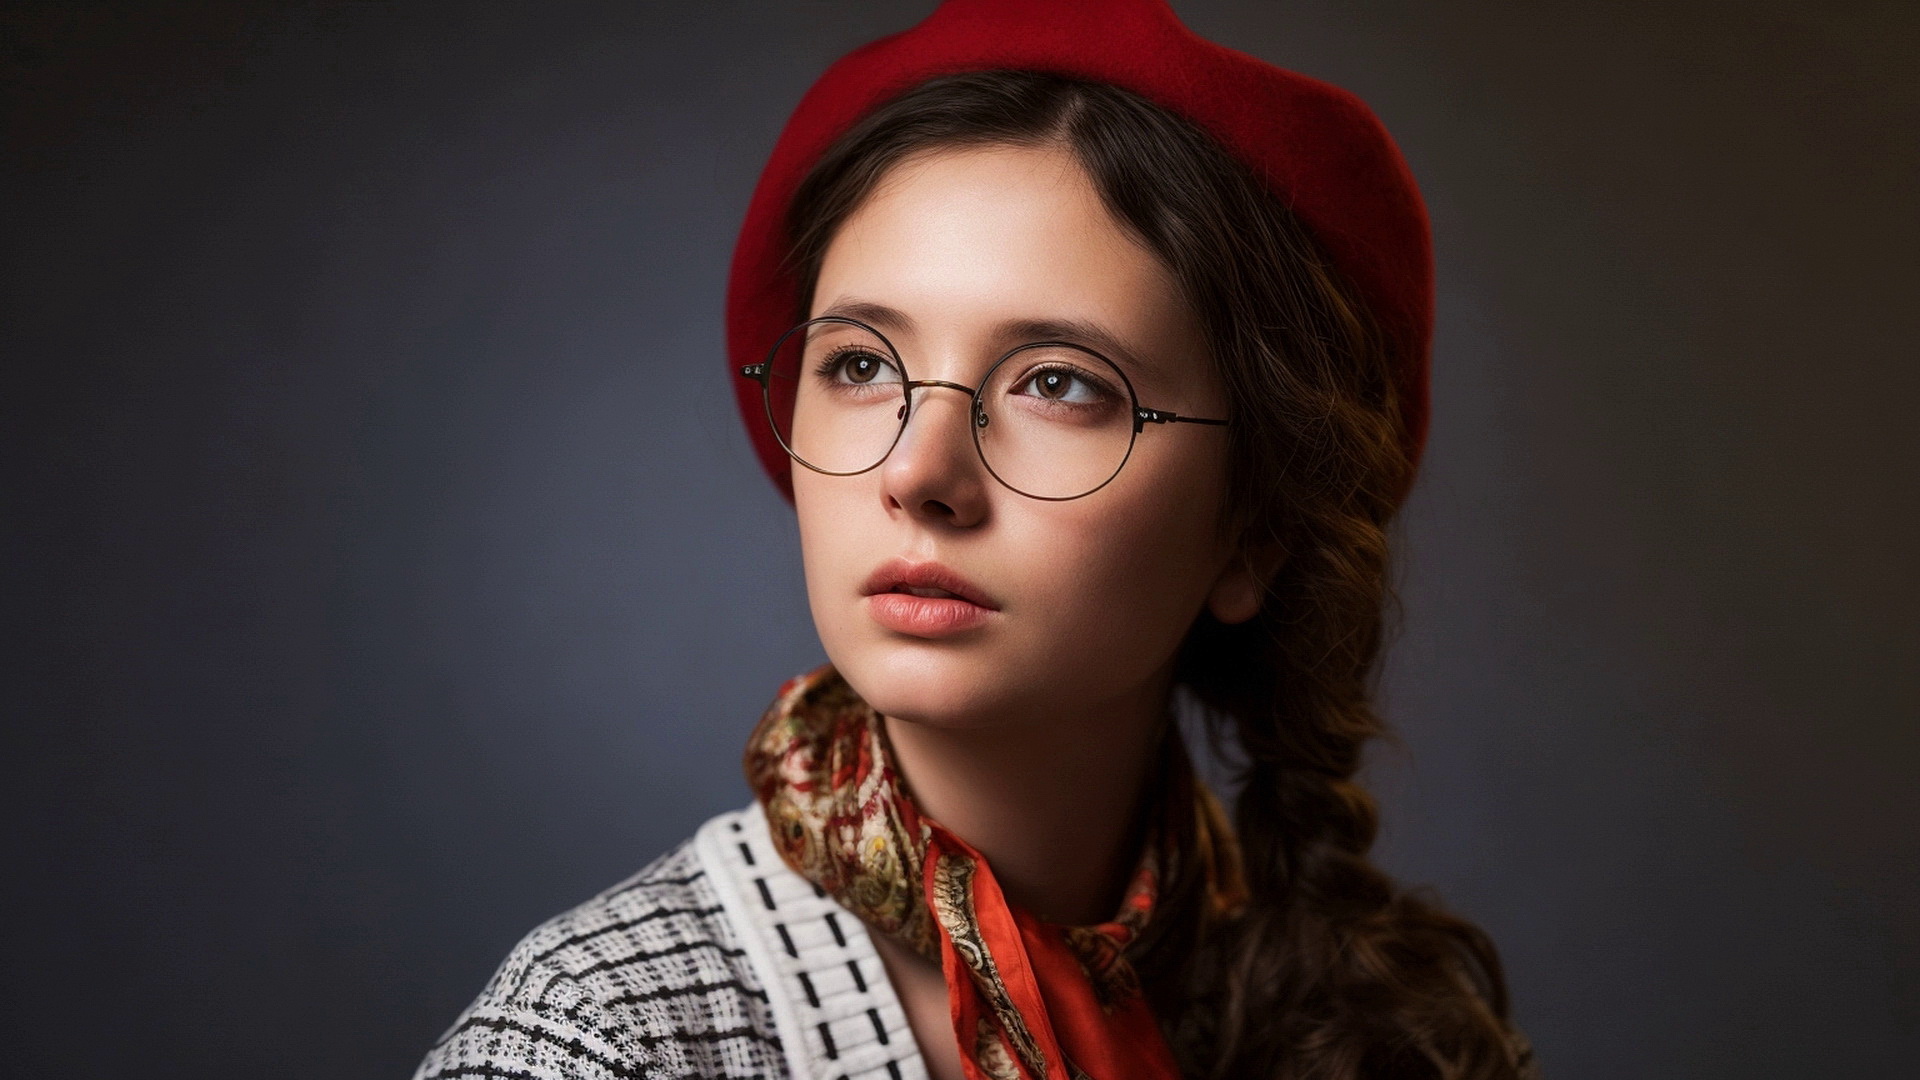 戴眼镜和红色贝雷帽的戴安娜-舍梅托娃肖像